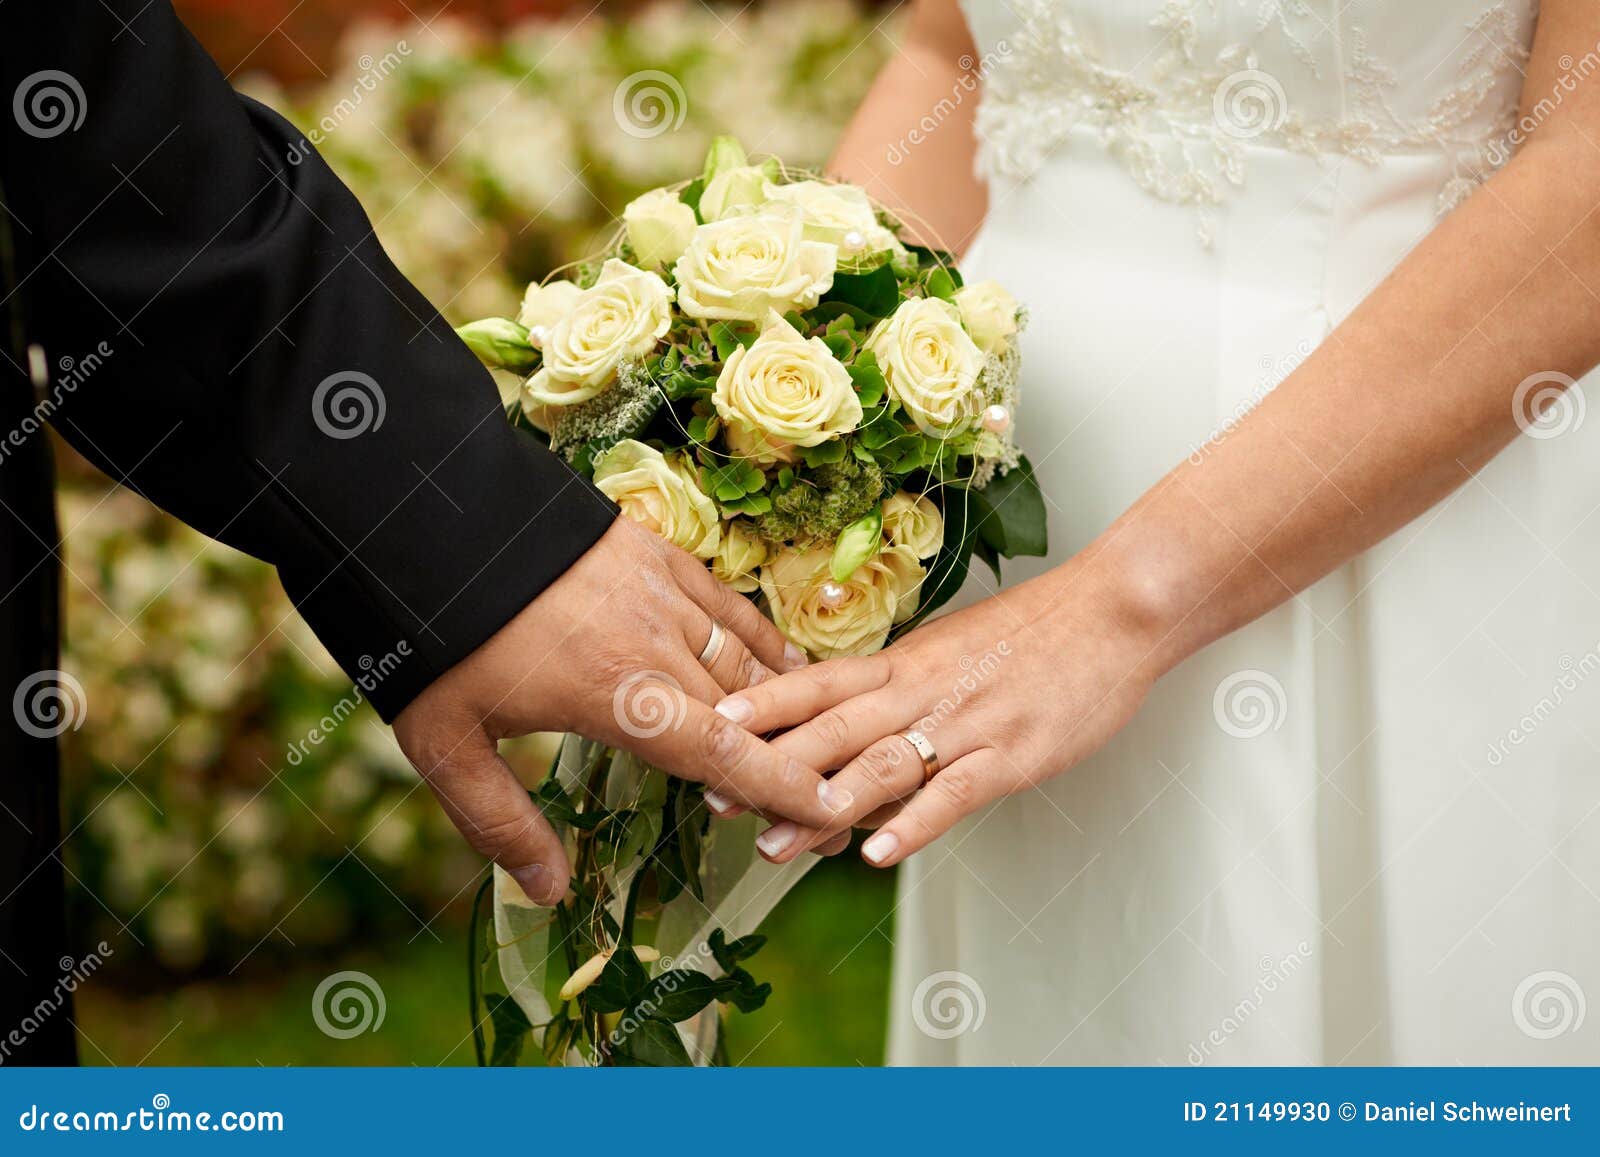 Wedding ceremony stock photo. Image of celebration, yellow - 21149930